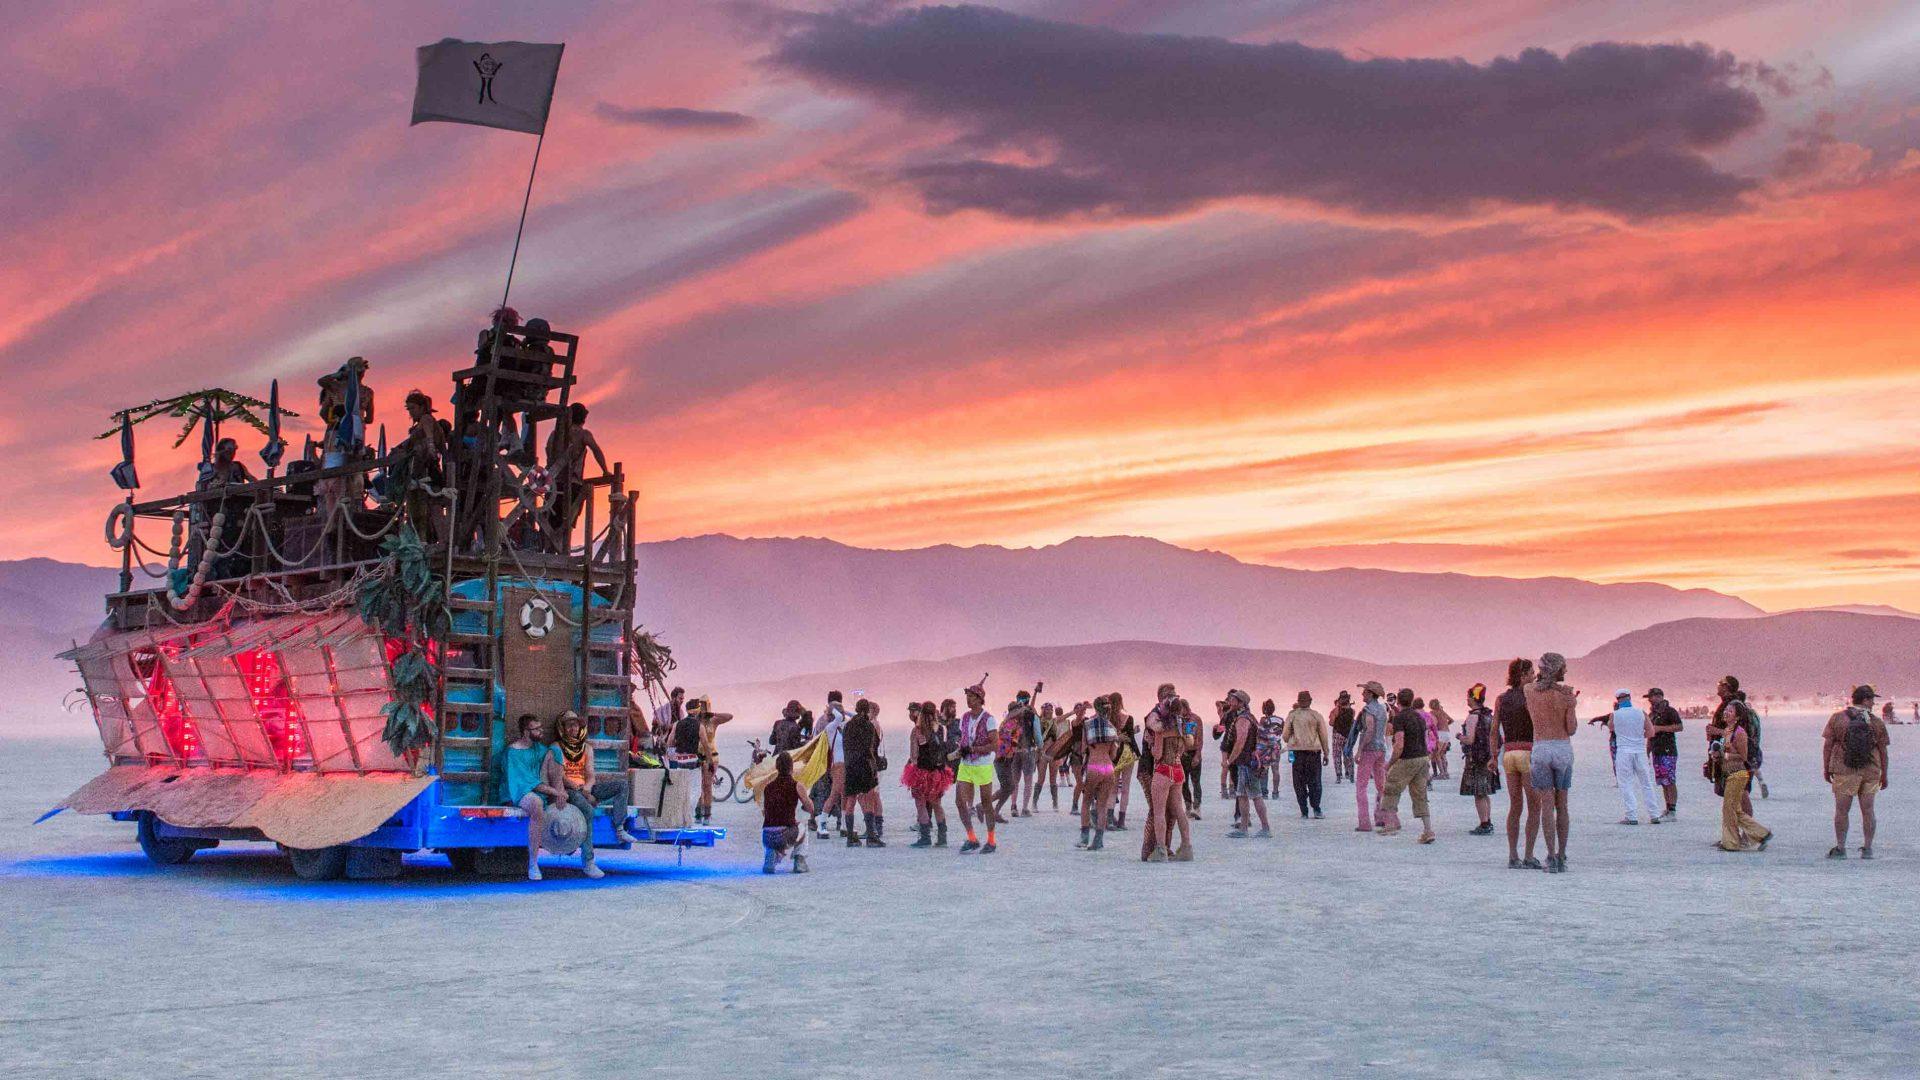 USA – Burning Man Festival – tripotour